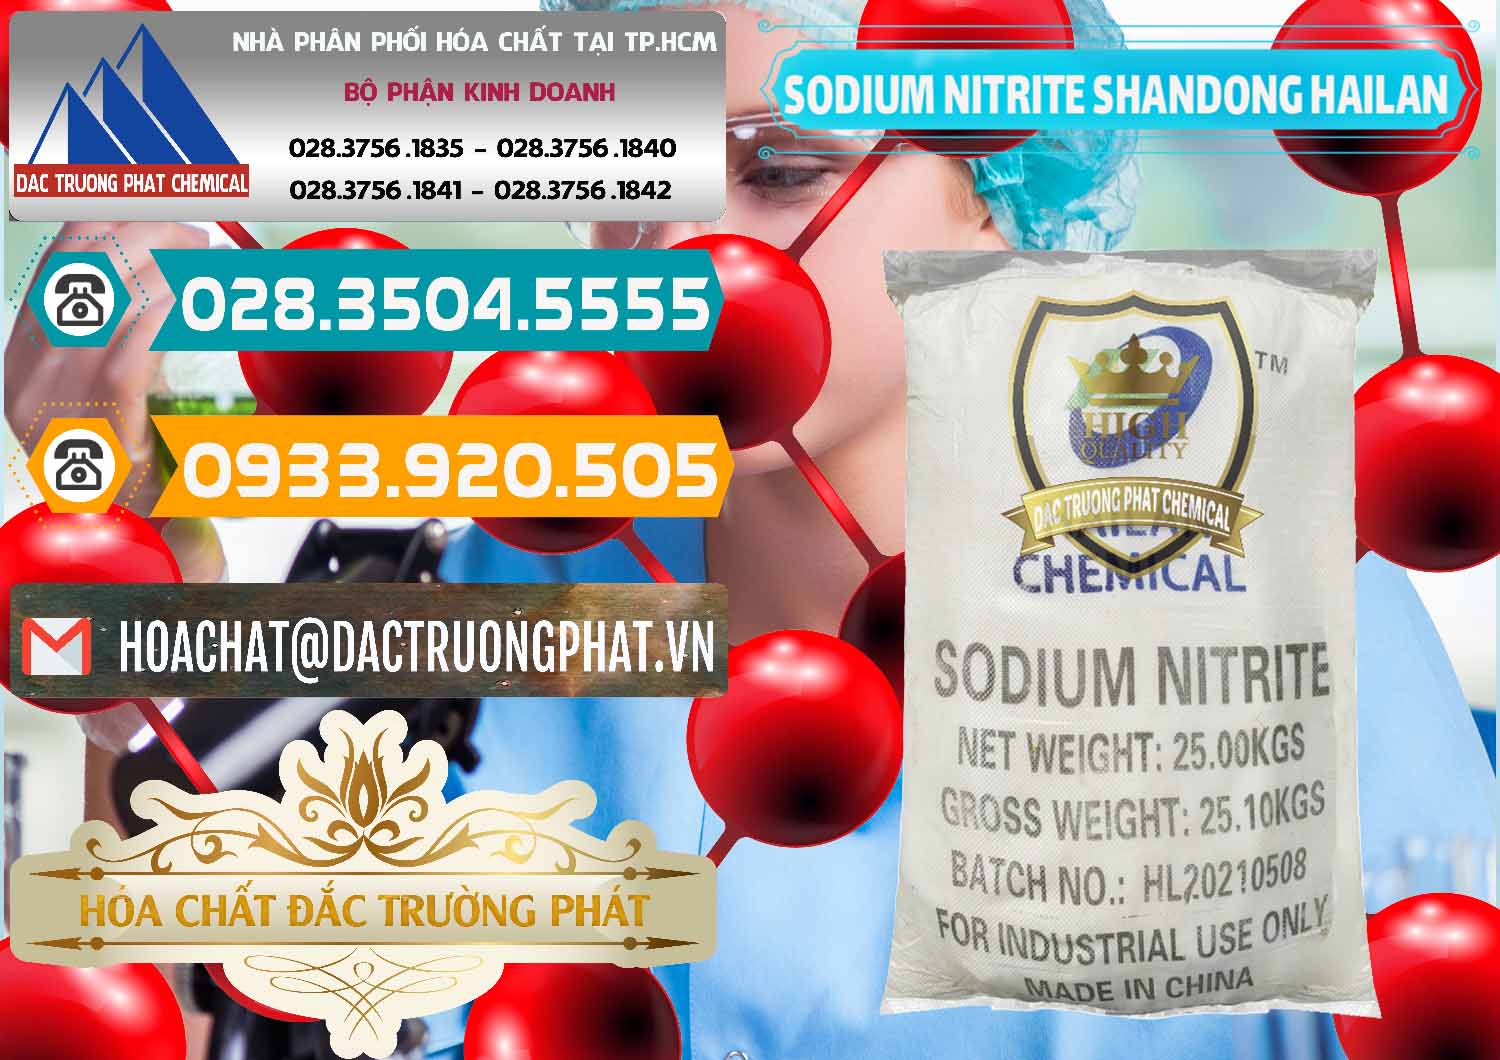 Cty cung ứng _ bán Sodium Nitrite - NANO2 99.3% Shandong Hailan Trung Quốc China - 0284 - Nơi chuyên kinh doanh _ cung cấp hóa chất tại TP.HCM - congtyhoachat.vn